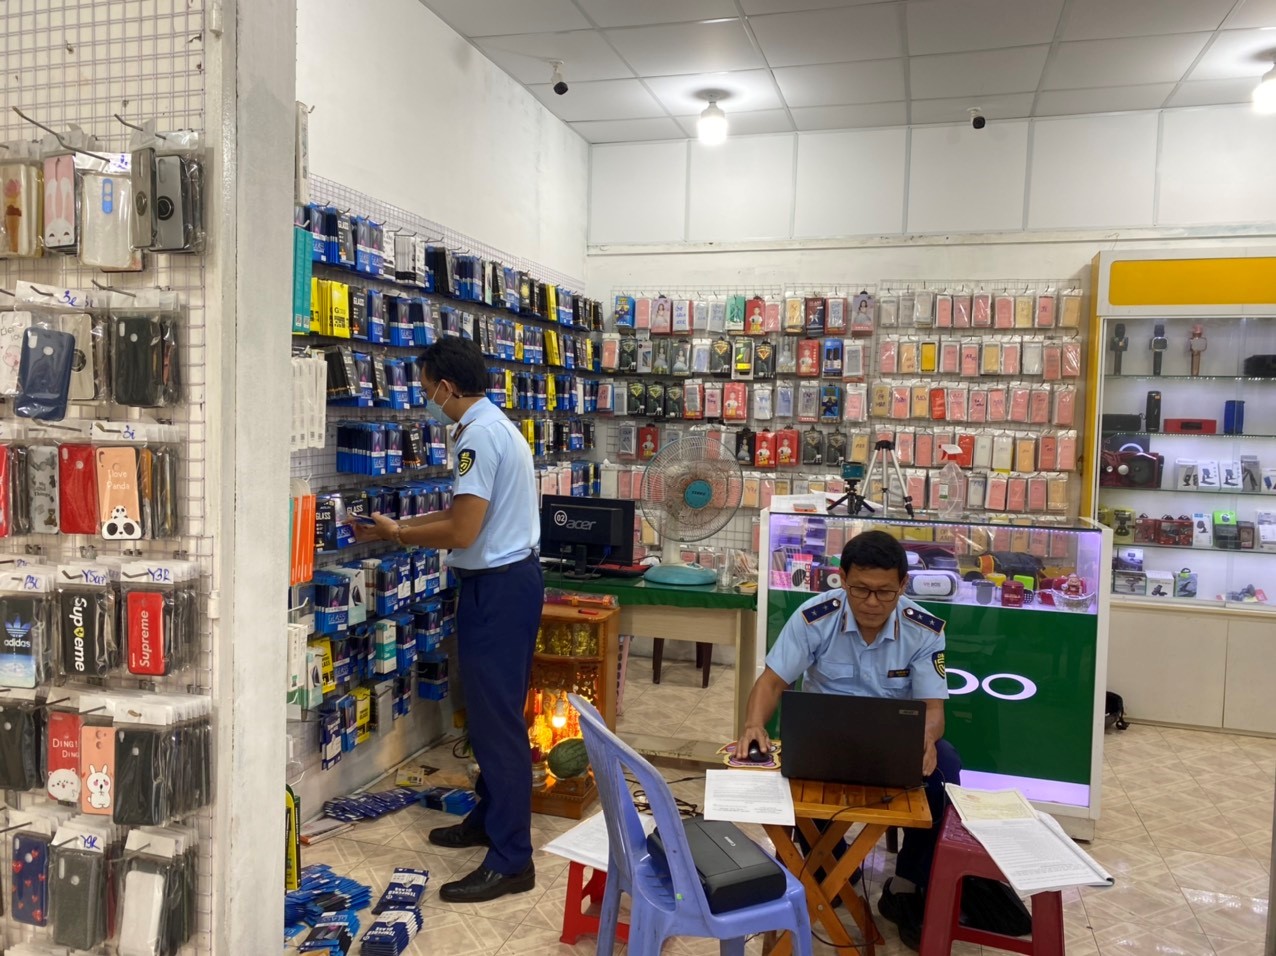 Bình Thuận tạm giữ gần 1.600 sản phẩm phụ kiện điện thoại không rõ nguồn gốc xuất xứ - Ảnh 1.